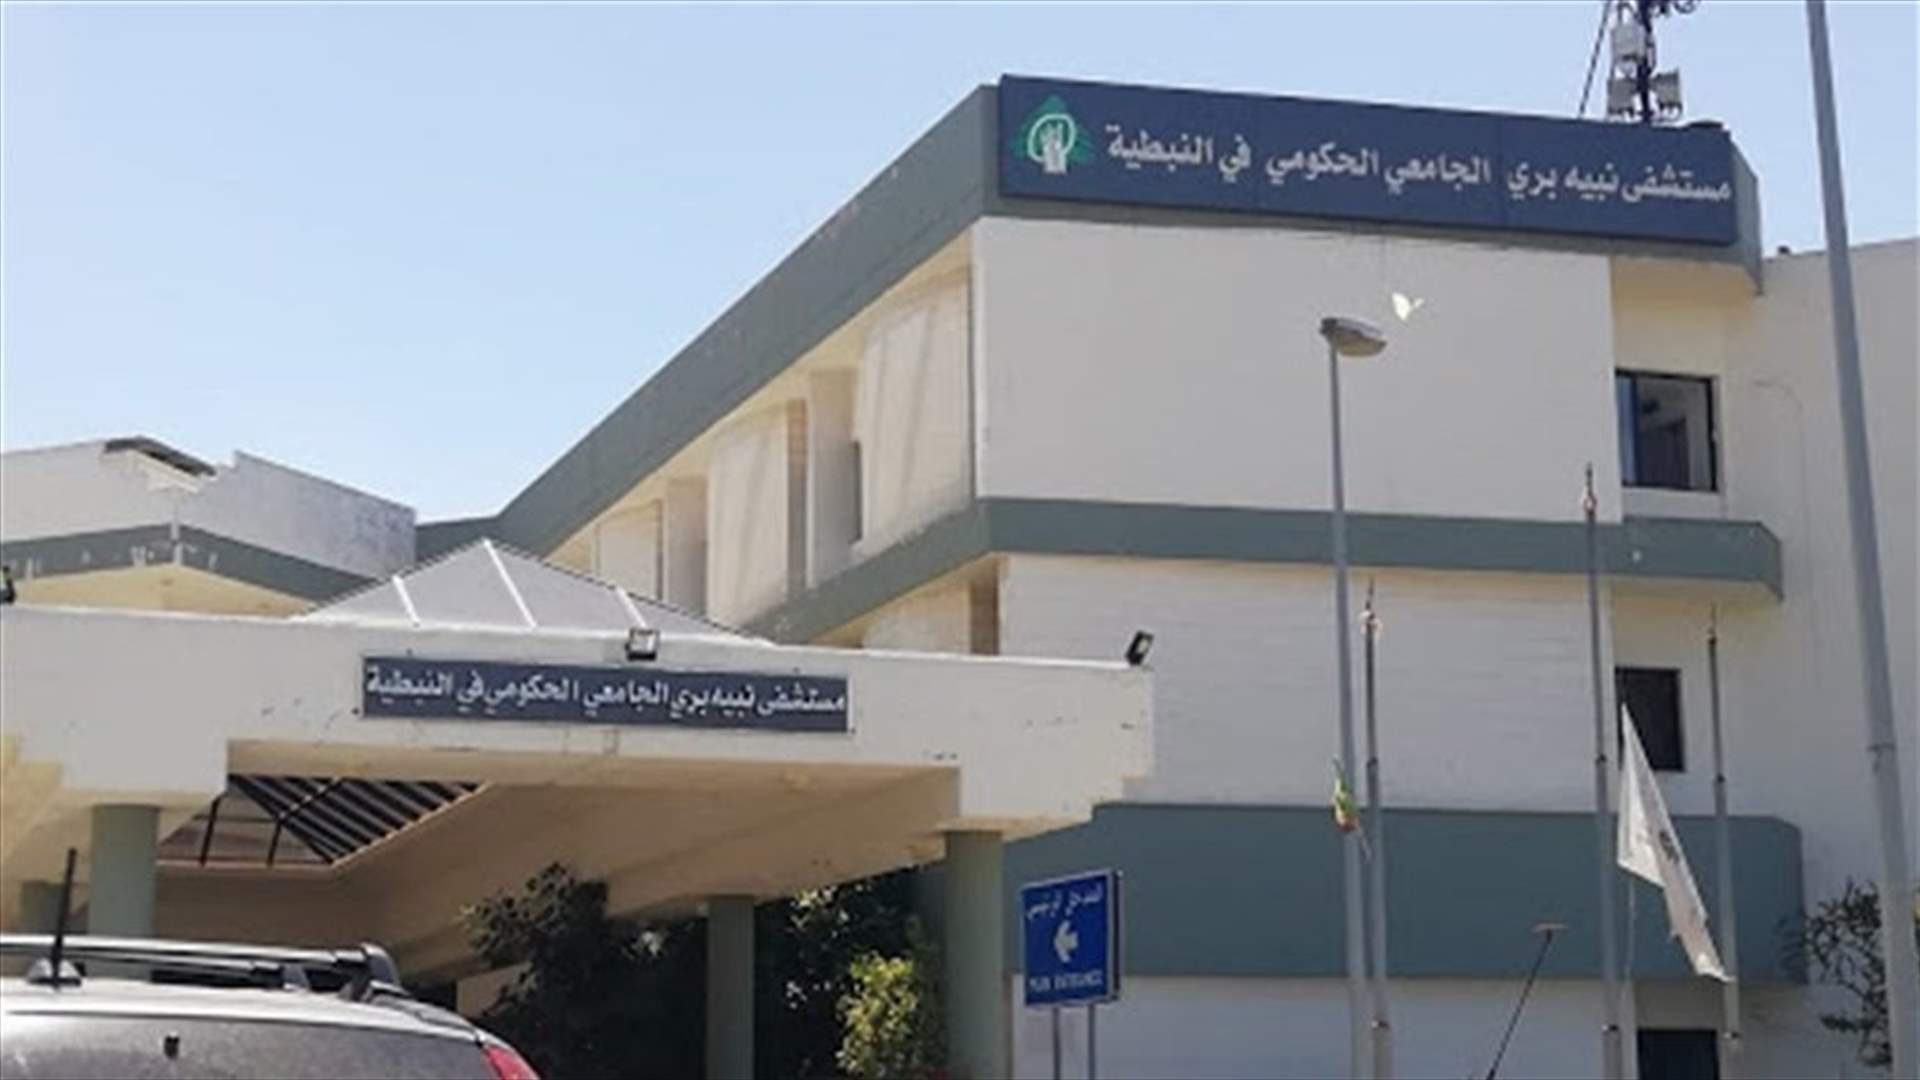 مدير مستشفى نبيه بري الحكومي يعلن إفتتاح قسم إضافي لمرضى كورونا